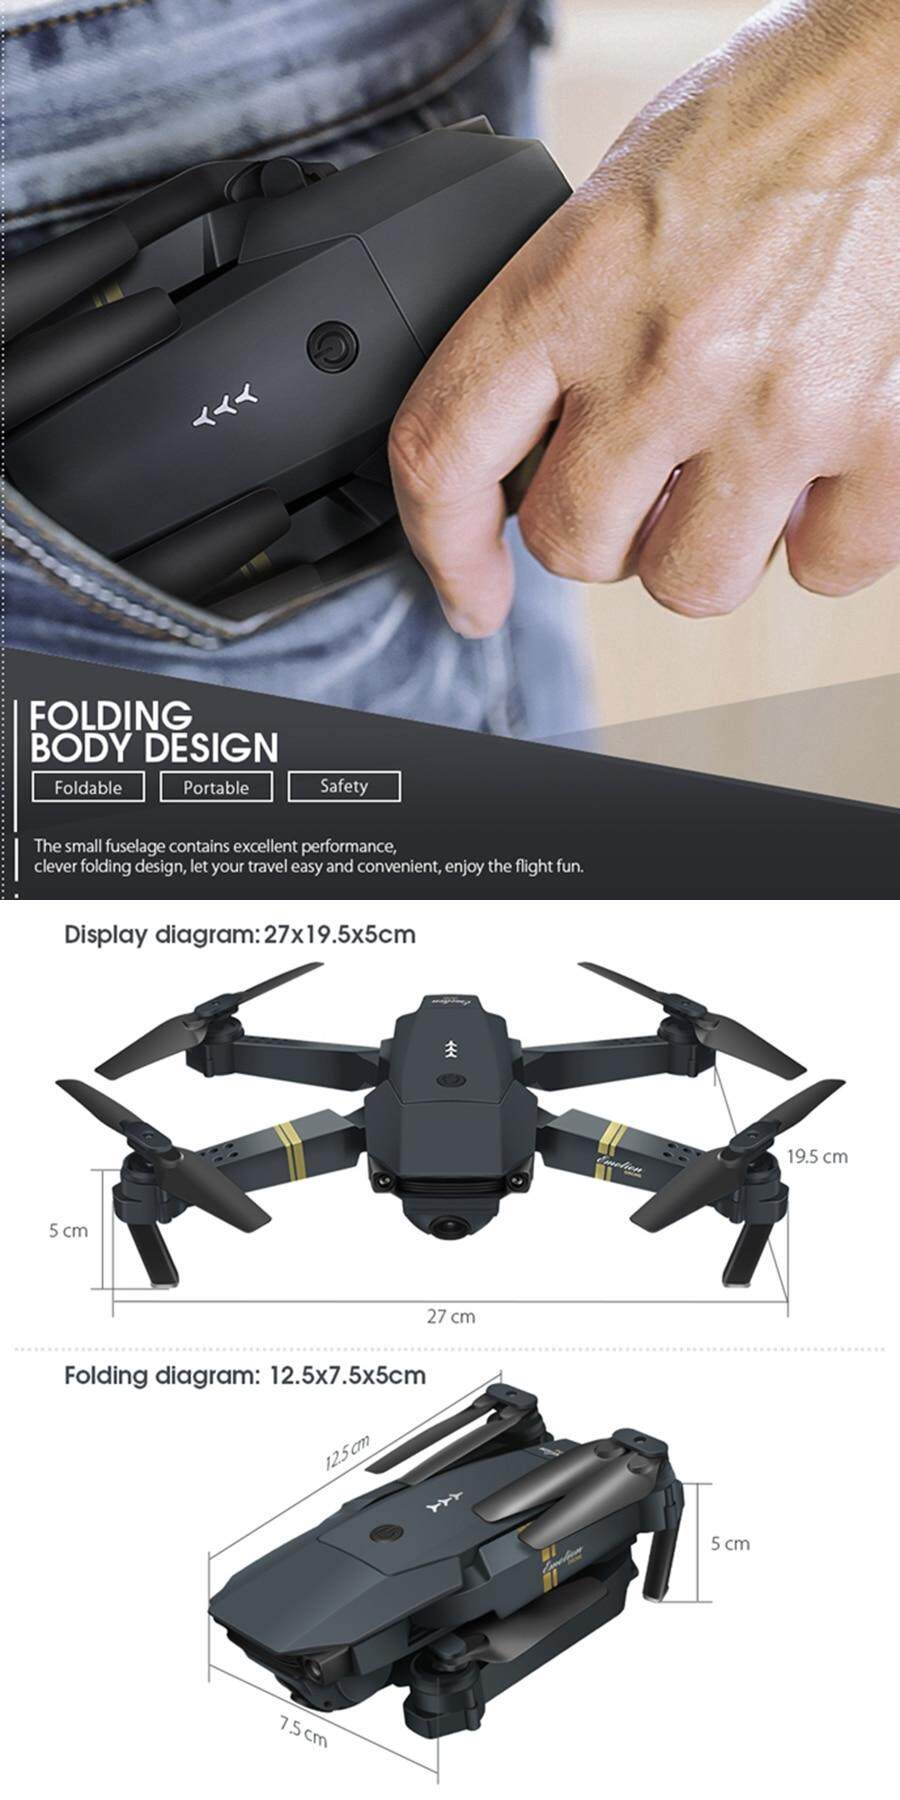 รายละเอียดเพิ่มเติมเกี่ยวกับ (ส่งมาจากประเทศไทย)โดรนบังคับ E58 WIFI FPV With Wide Angle HD 1080P Camera โดรนติดกล้อง Hight Hold Mode Foldable Arm RC Qpter Drone โดรนบังคับ X Pro RTF Dron For Gift